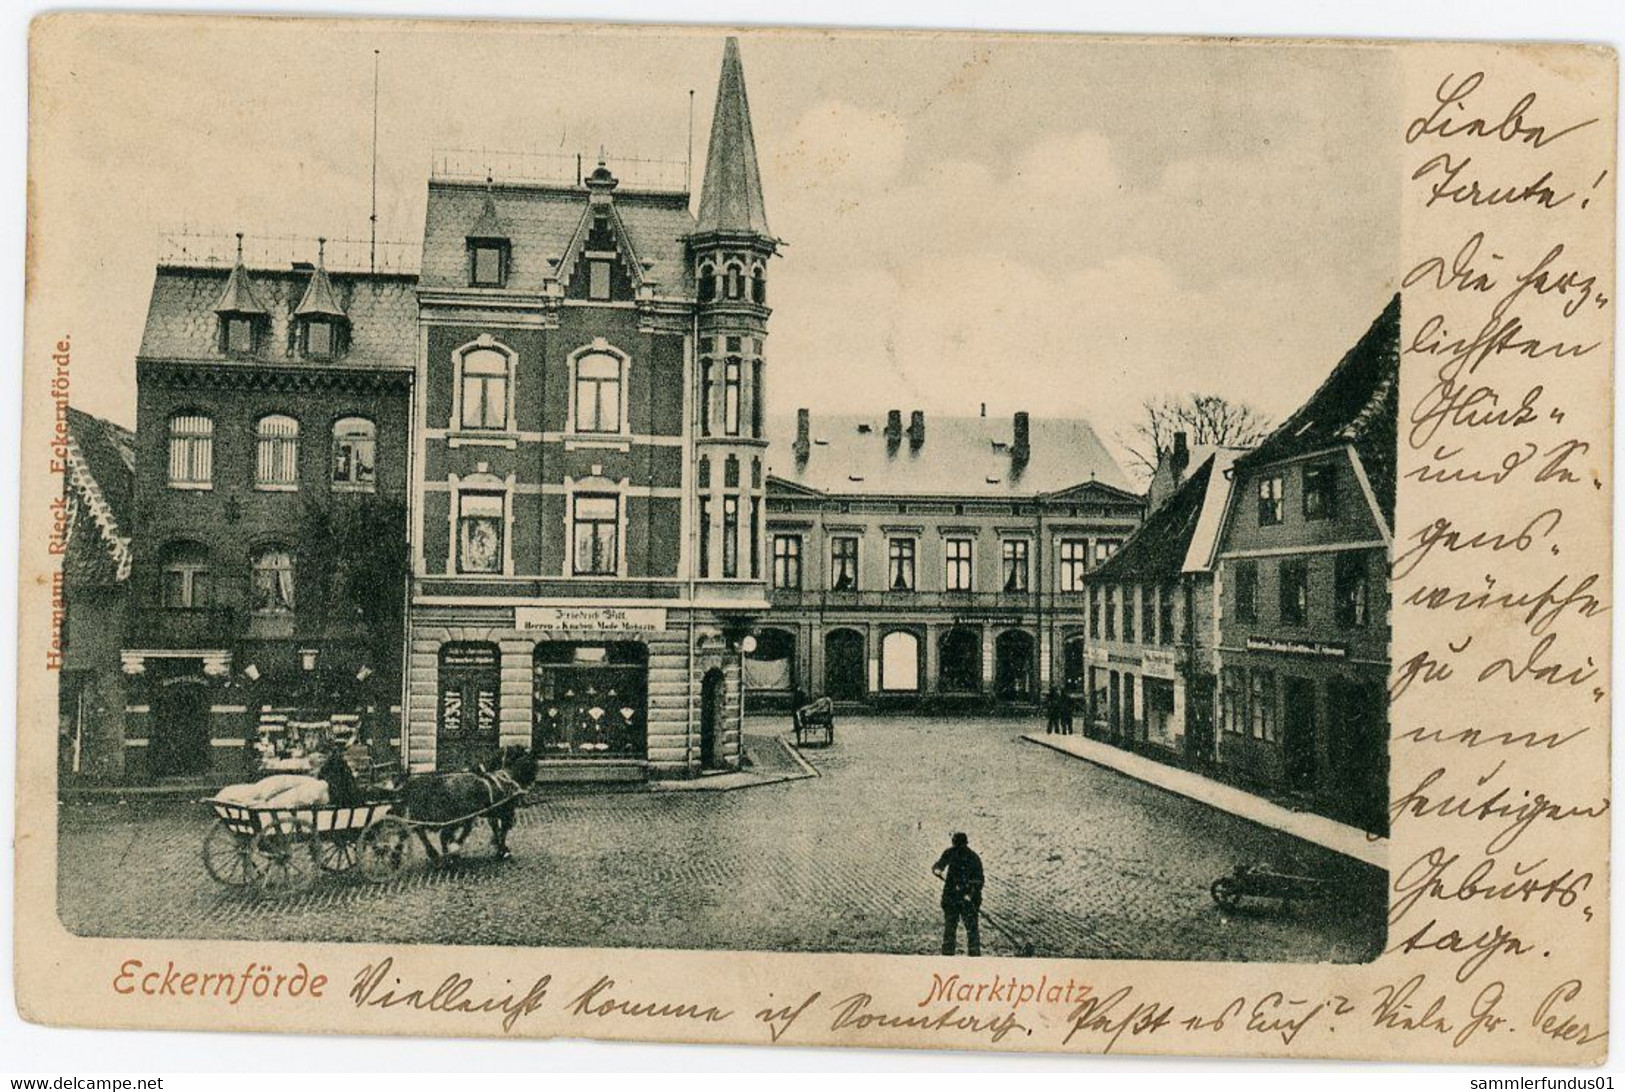 AK/CP Eckernförde  Rathausmarkt  Kieler Strasse      Gel./circ.1905  Erhaltung/Cond. 2  Nr. 01472 - Eckernförde